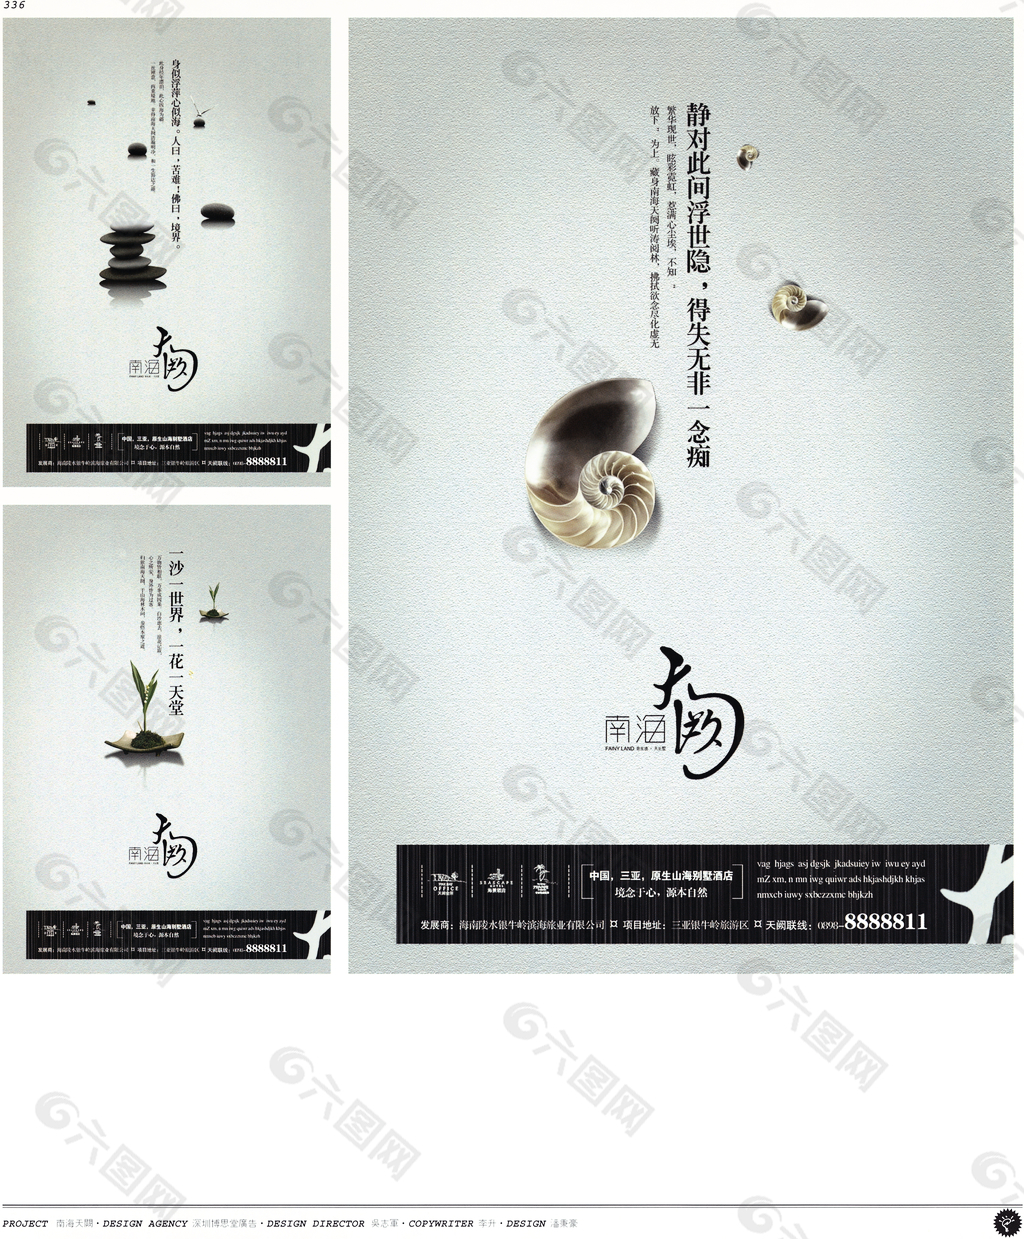 中国房地产广告年鉴 第二册 创意设计_0318